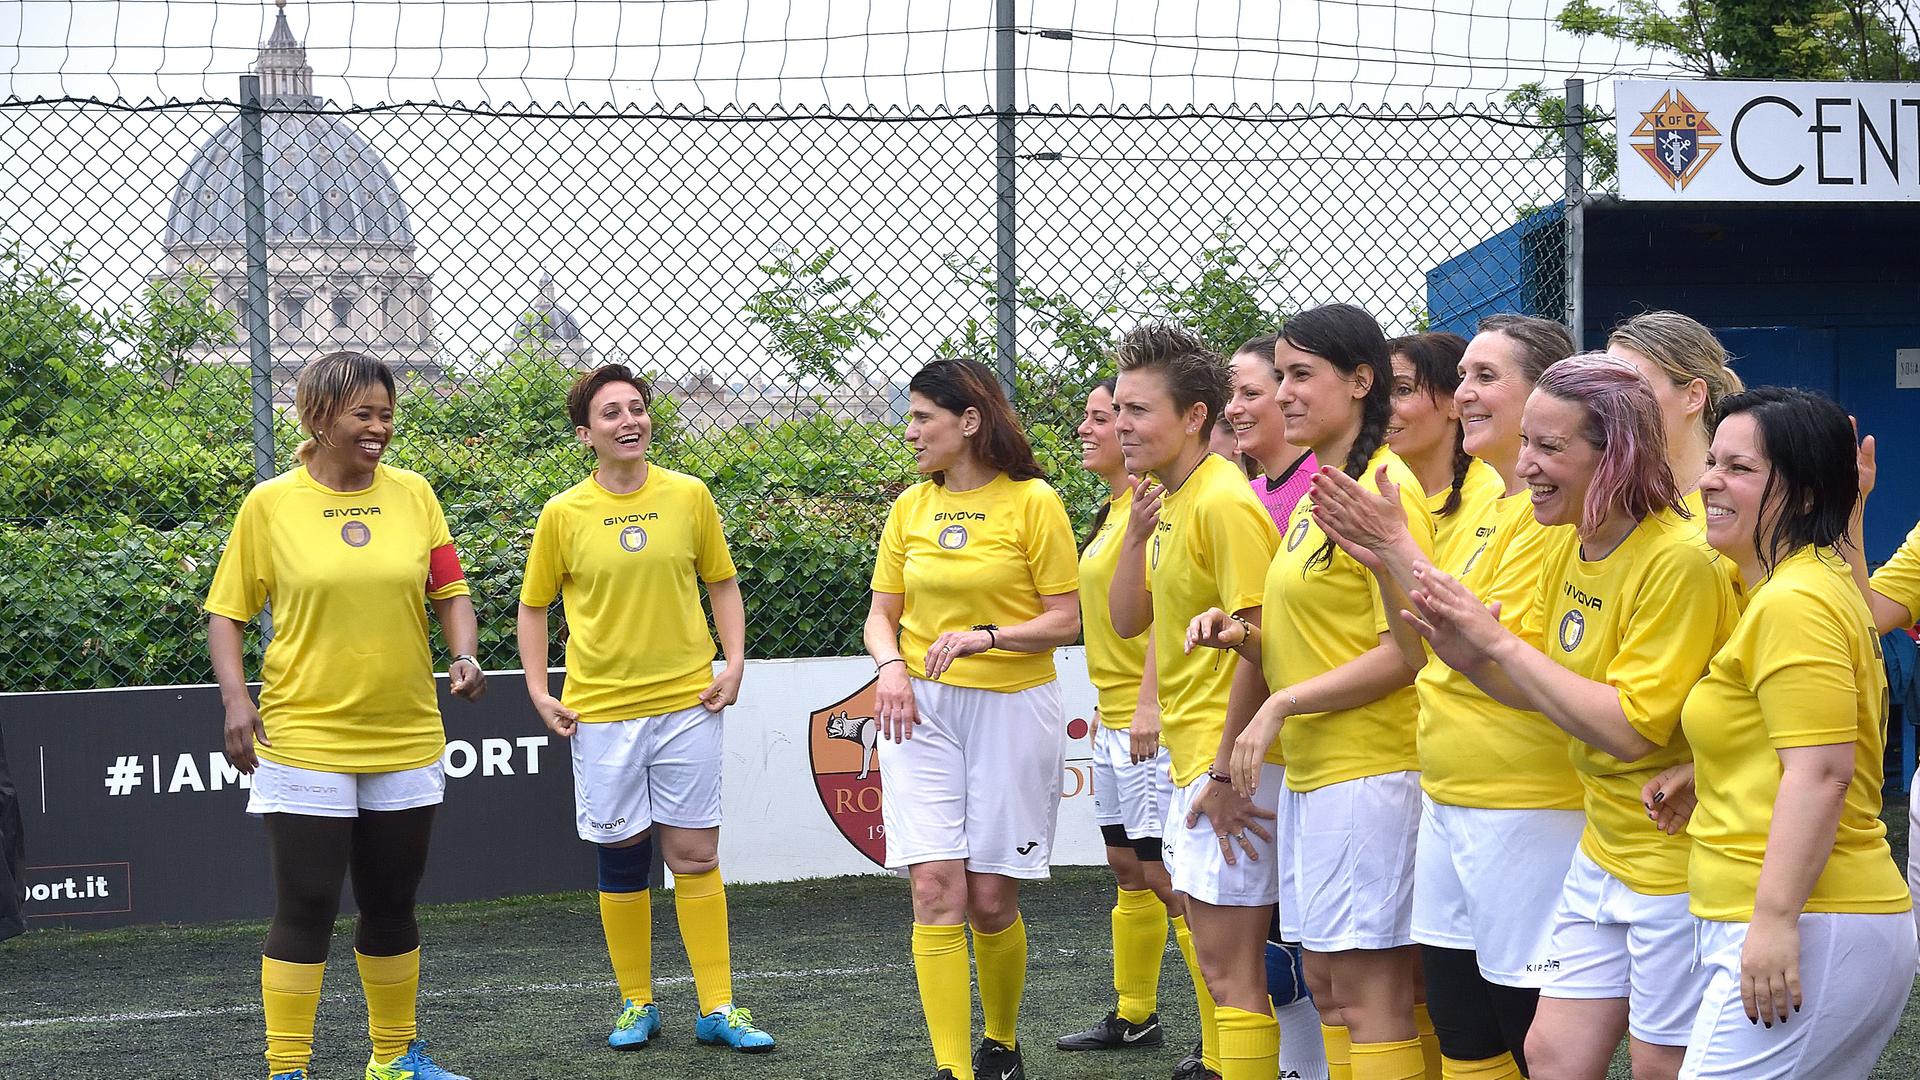 Das Frauen-Fußballteam des Vatikans im Mai 2019. Die Frauen stehen lachend in gelben Trikots und weißen Hosen zusammen. Im Hintergrund ist der Petersdom zu sehen.